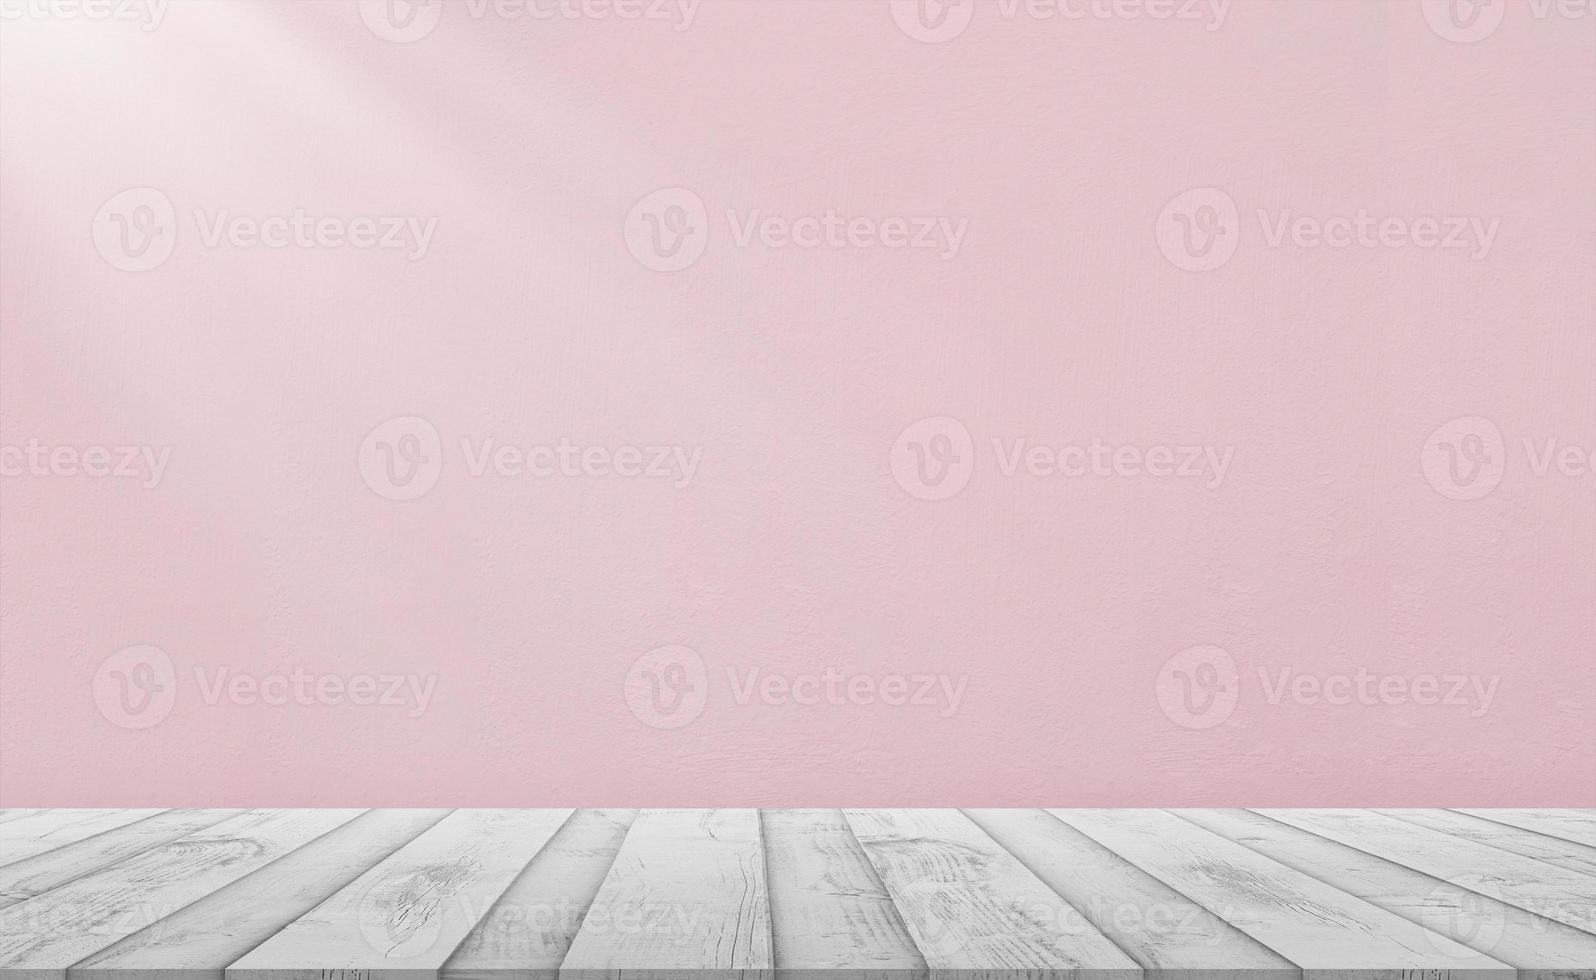 Beton Mauer Textur mit Weiß Holz oben Tisch, Holz Fußboden mit Korn Oberfläche auf Beige Zement Hintergrund, Außen Hintergrund mit verputzt Stuck auf Gebäude, Horizont Mauer gemalt eben verblassen Pastell- foto